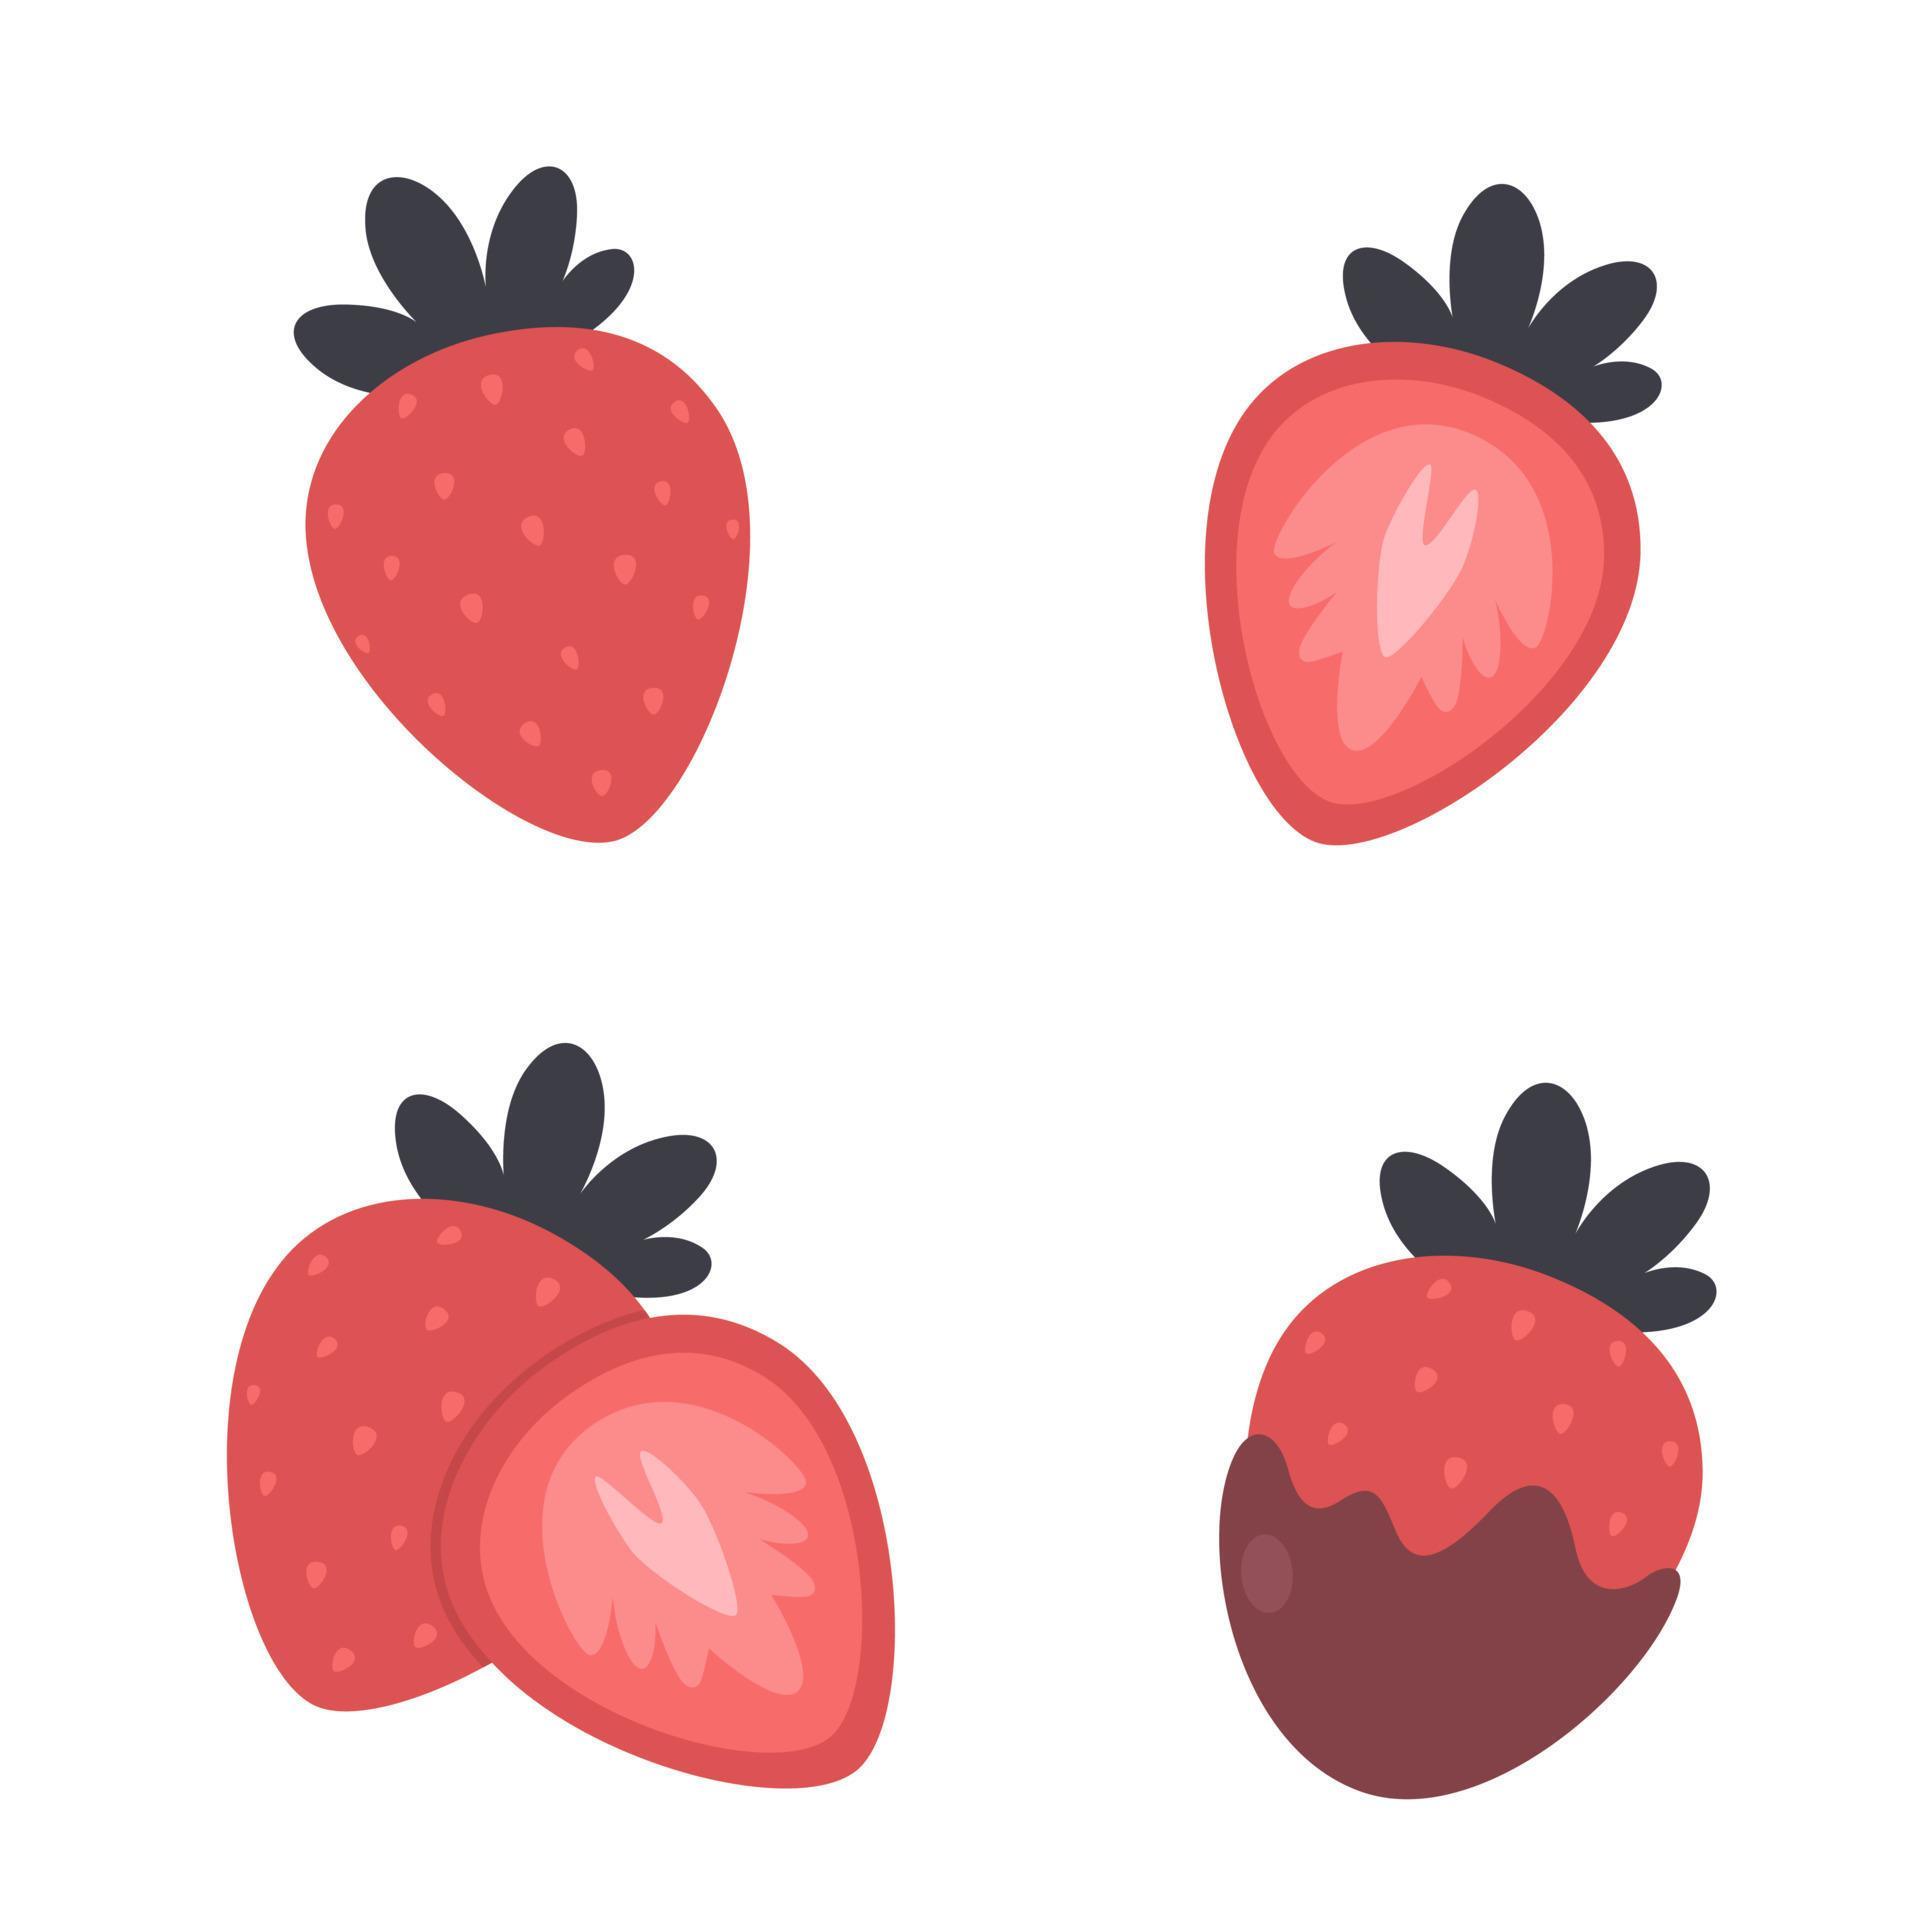 fraise et tranche de fraise. fruits et baies. romantique, amour, élément de la saint valentin vecteur